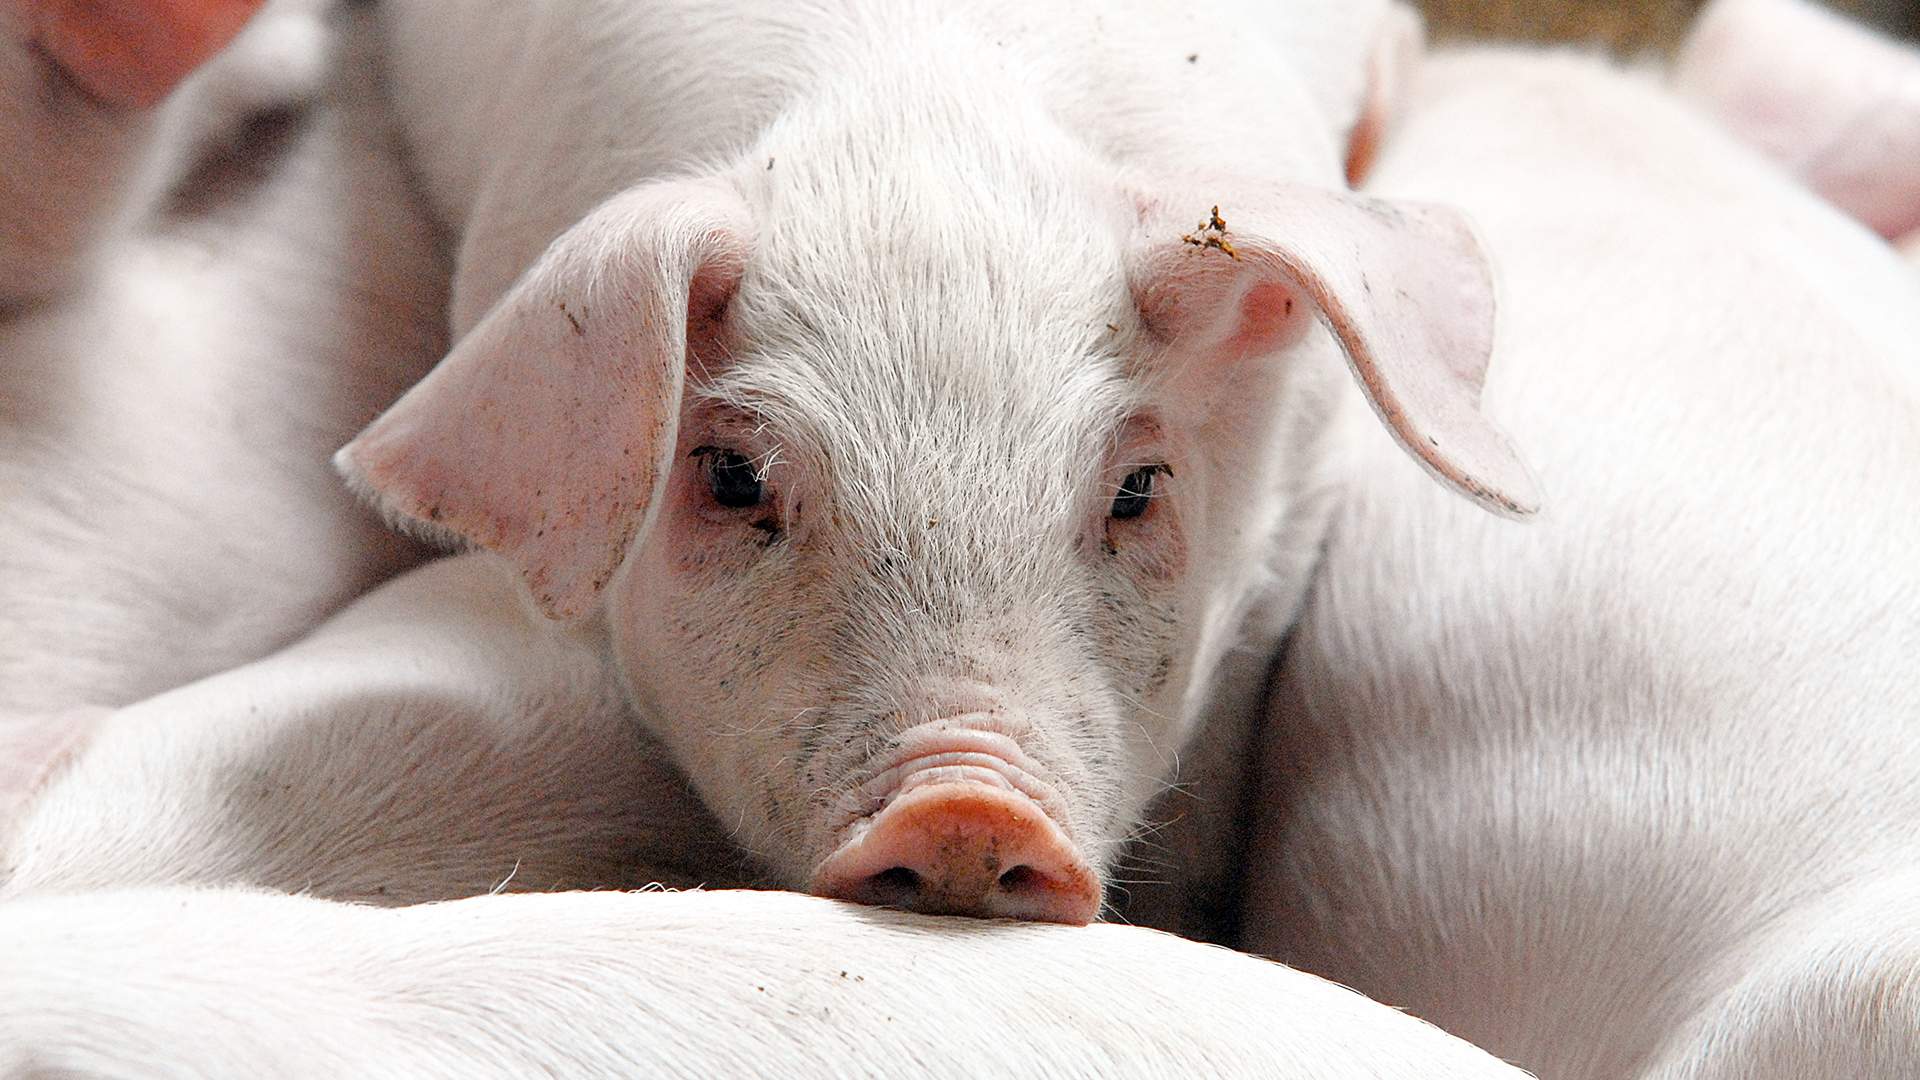 Глисты у свиней: симптомы и лечение, фото